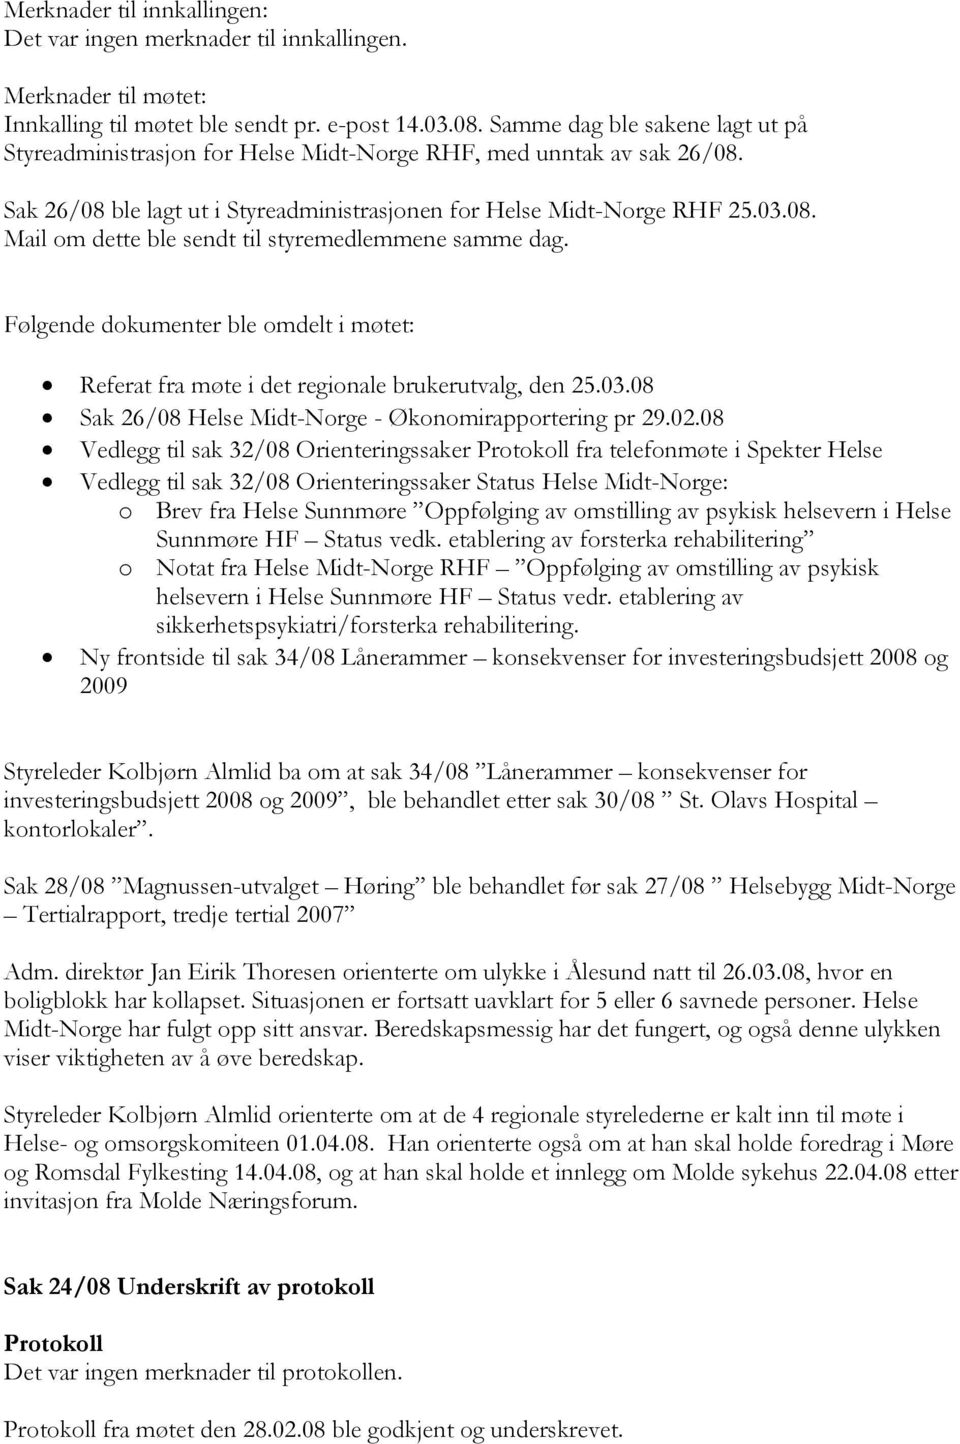 Følgende dokumenter ble omdelt i møtet: Referat fra møte i det regionale brukerutvalg, den 25.03.08 Sak 26/08 Helse Midt-Norge - Økonomirapportering pr 29.02.